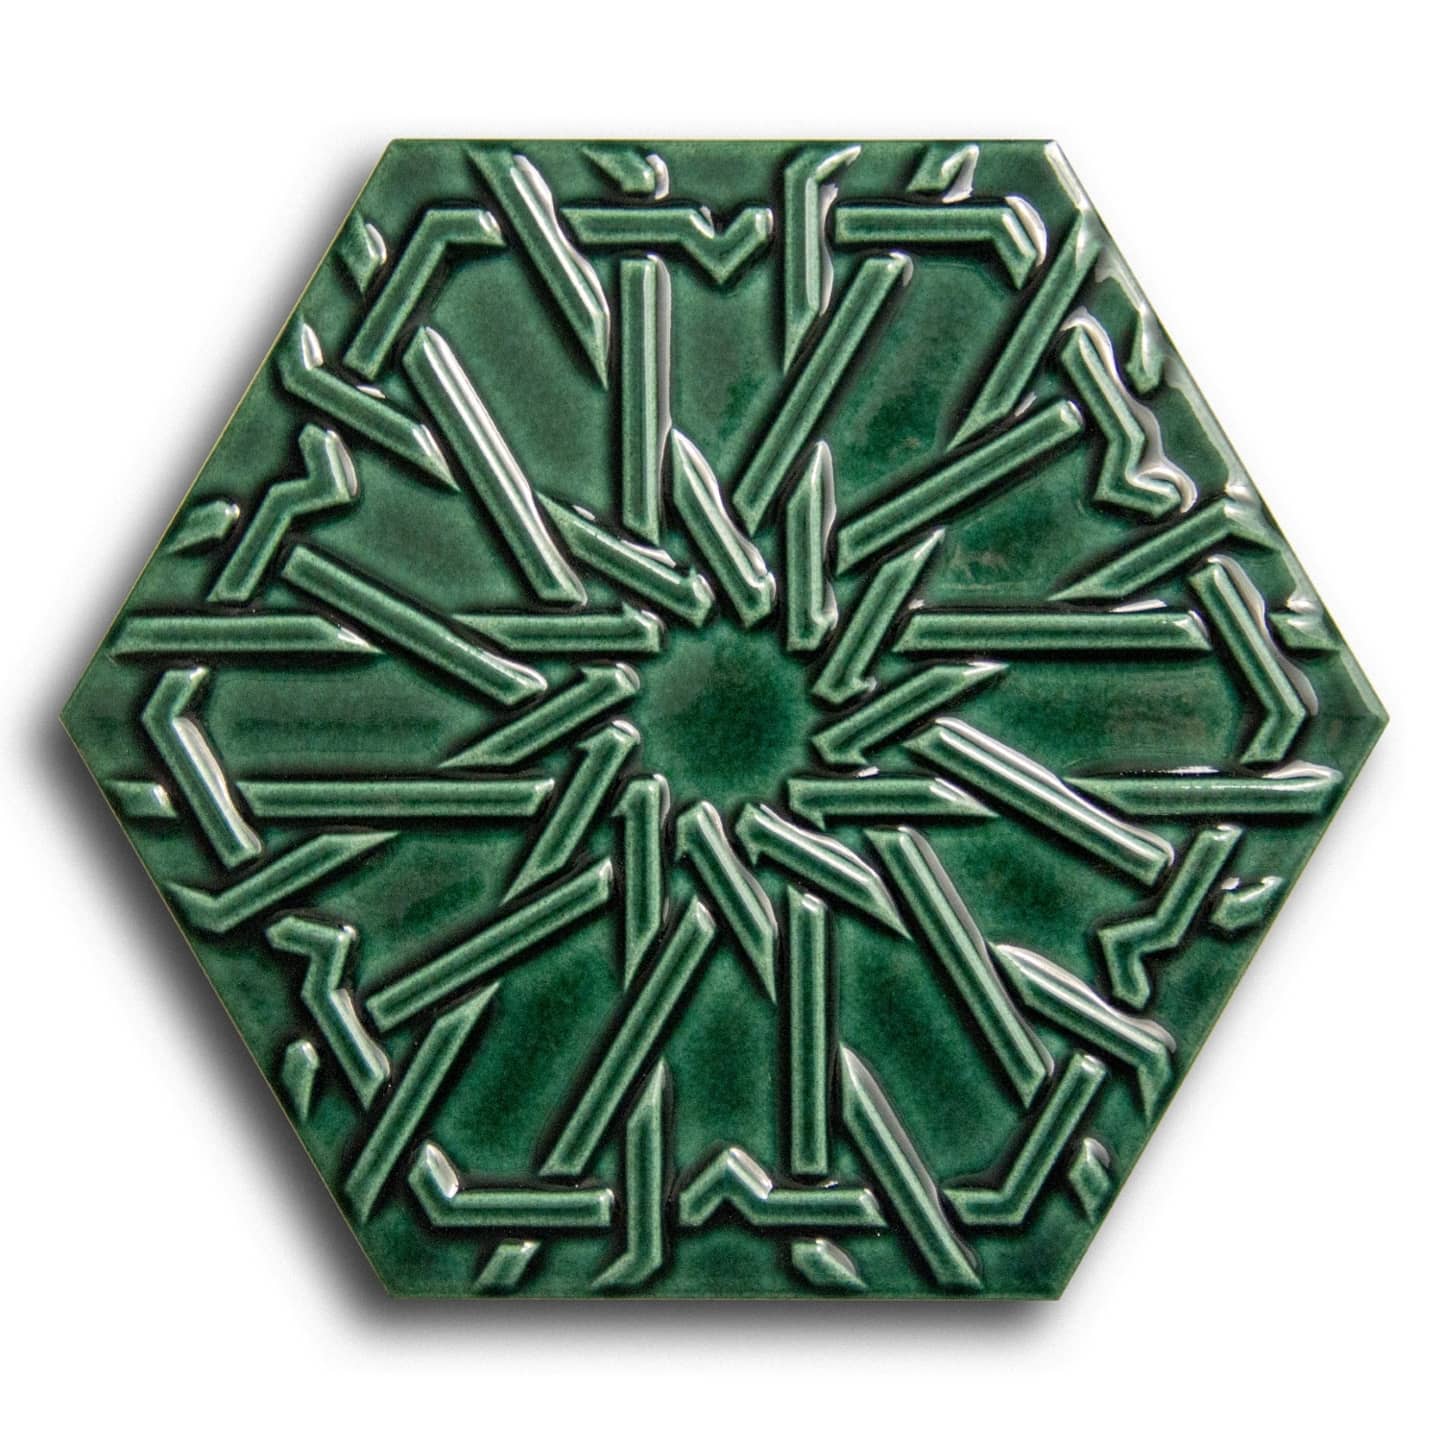 Hexagon Star Emerald Green